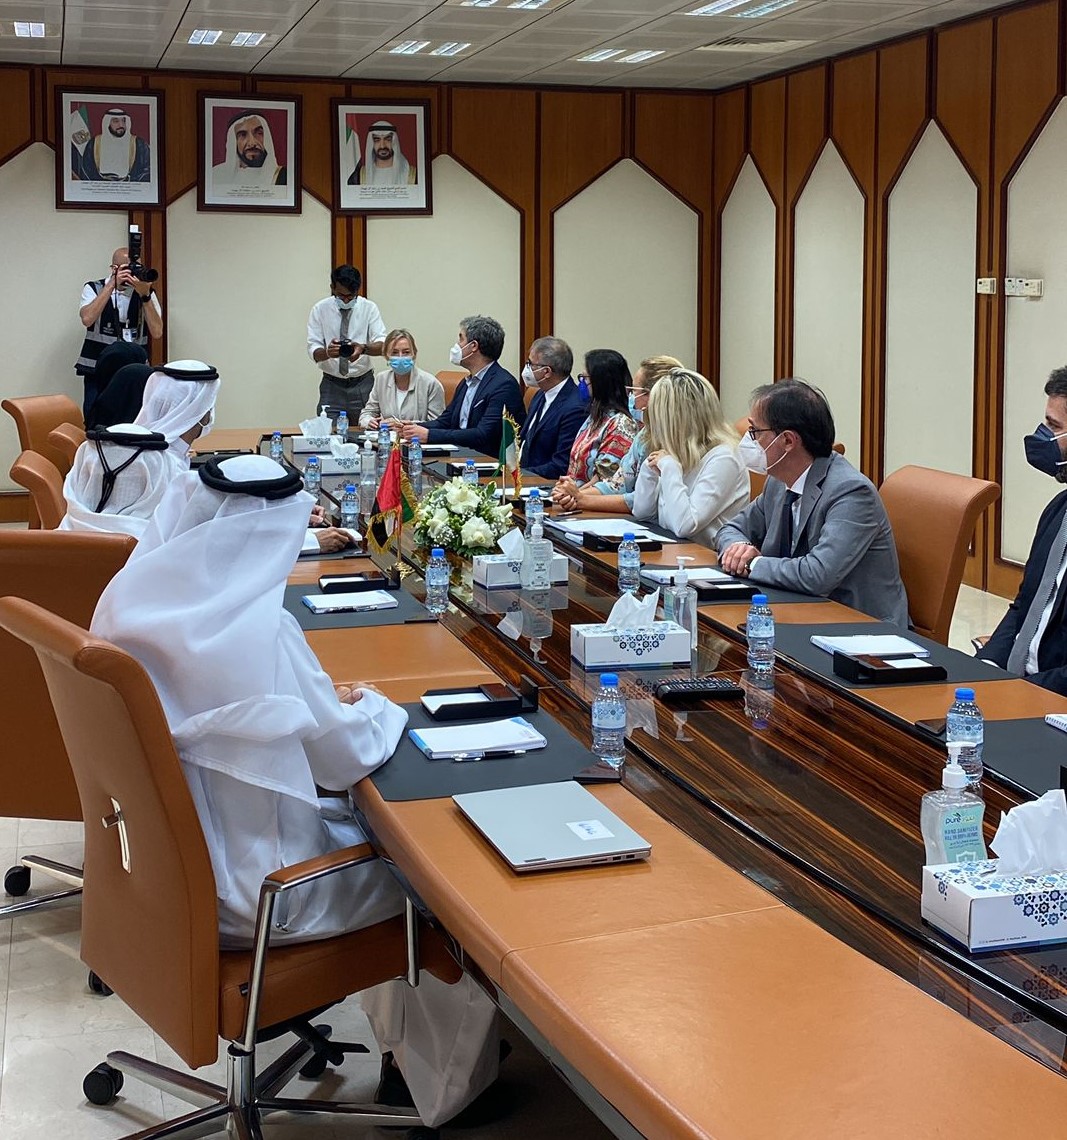 Galleria Emirati Arabi Uniti, continuano gli incontri istituzionali delle delegazioni pugliesi guidate dagli assessori Delli Noci, Maraschio e dal rettore Cupertino - Diapositiva 1 di 10